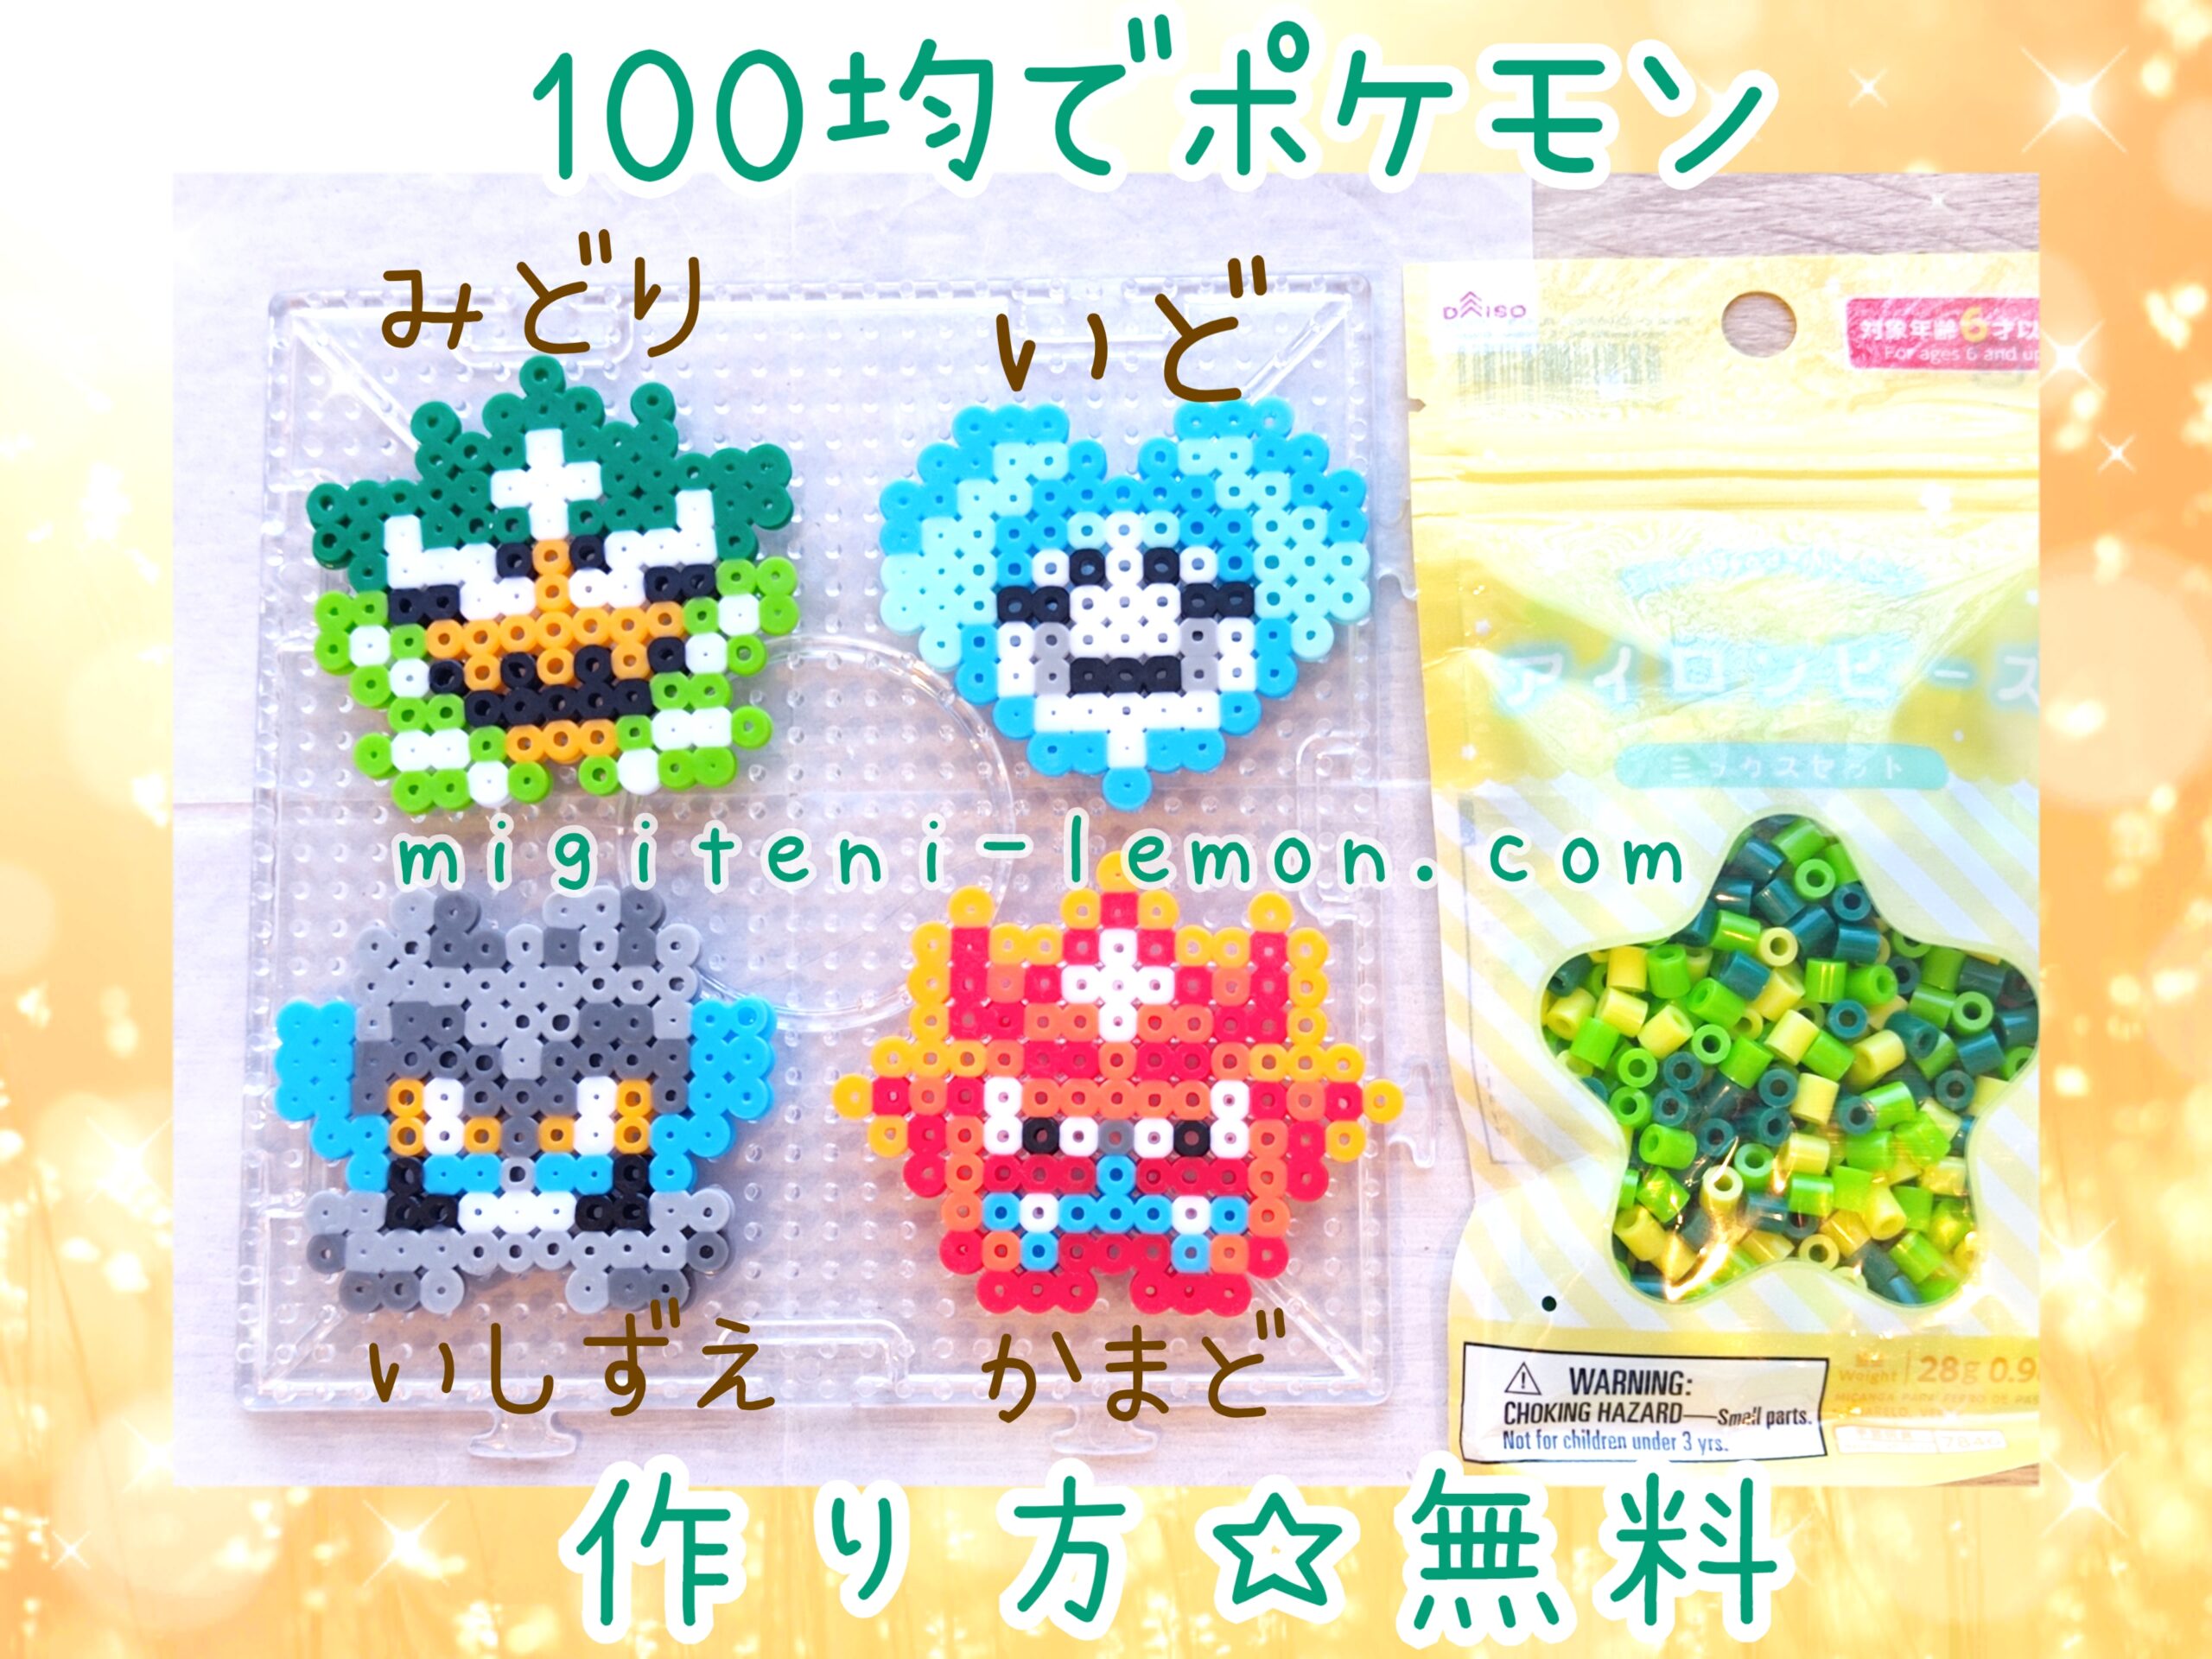 ogerpon-mask-pokemon-beads-zuan-sv-dlc-handmade